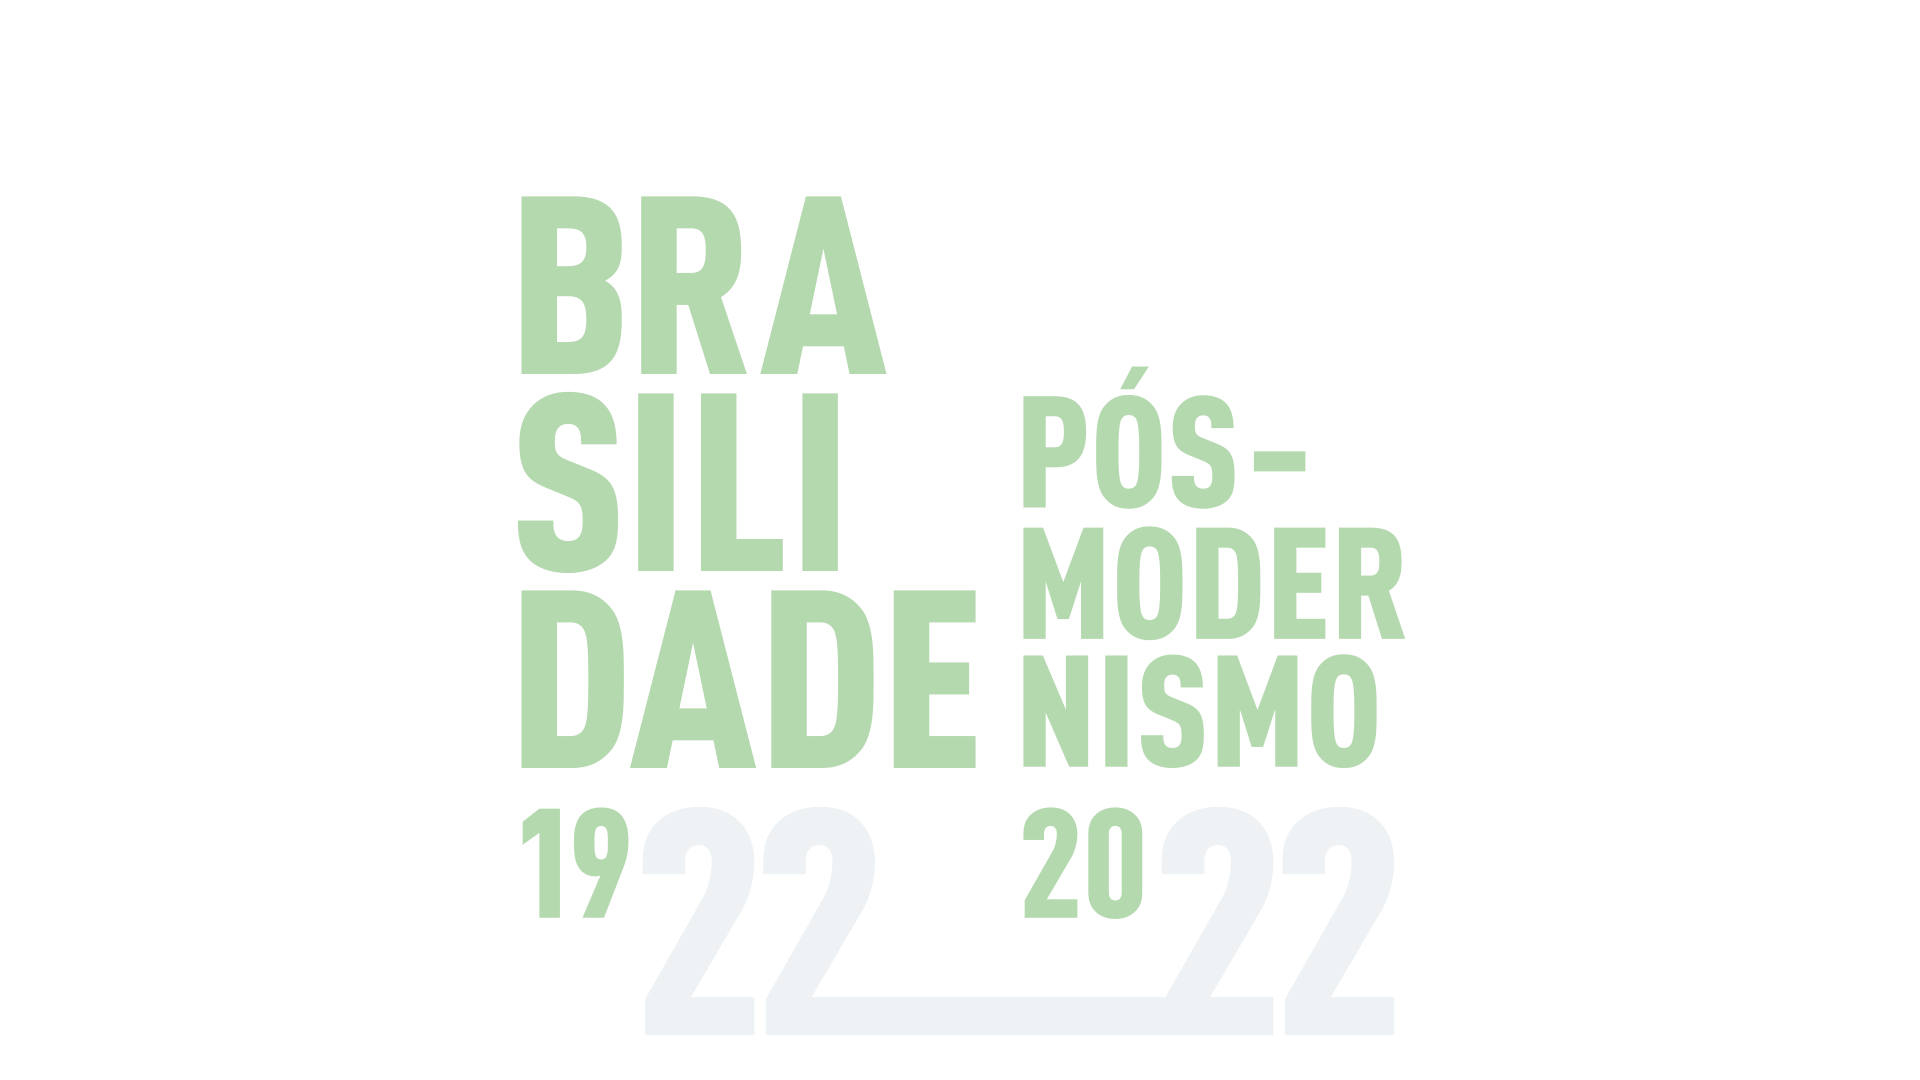 Sobre fundo azul acinzentado, em letras esverdeadas claras, o texto: “Brasilidade 19. Pós – Modernismo 20.” Entre os números 19 e 20, estão dois números 22, formando 1922 e 2022.